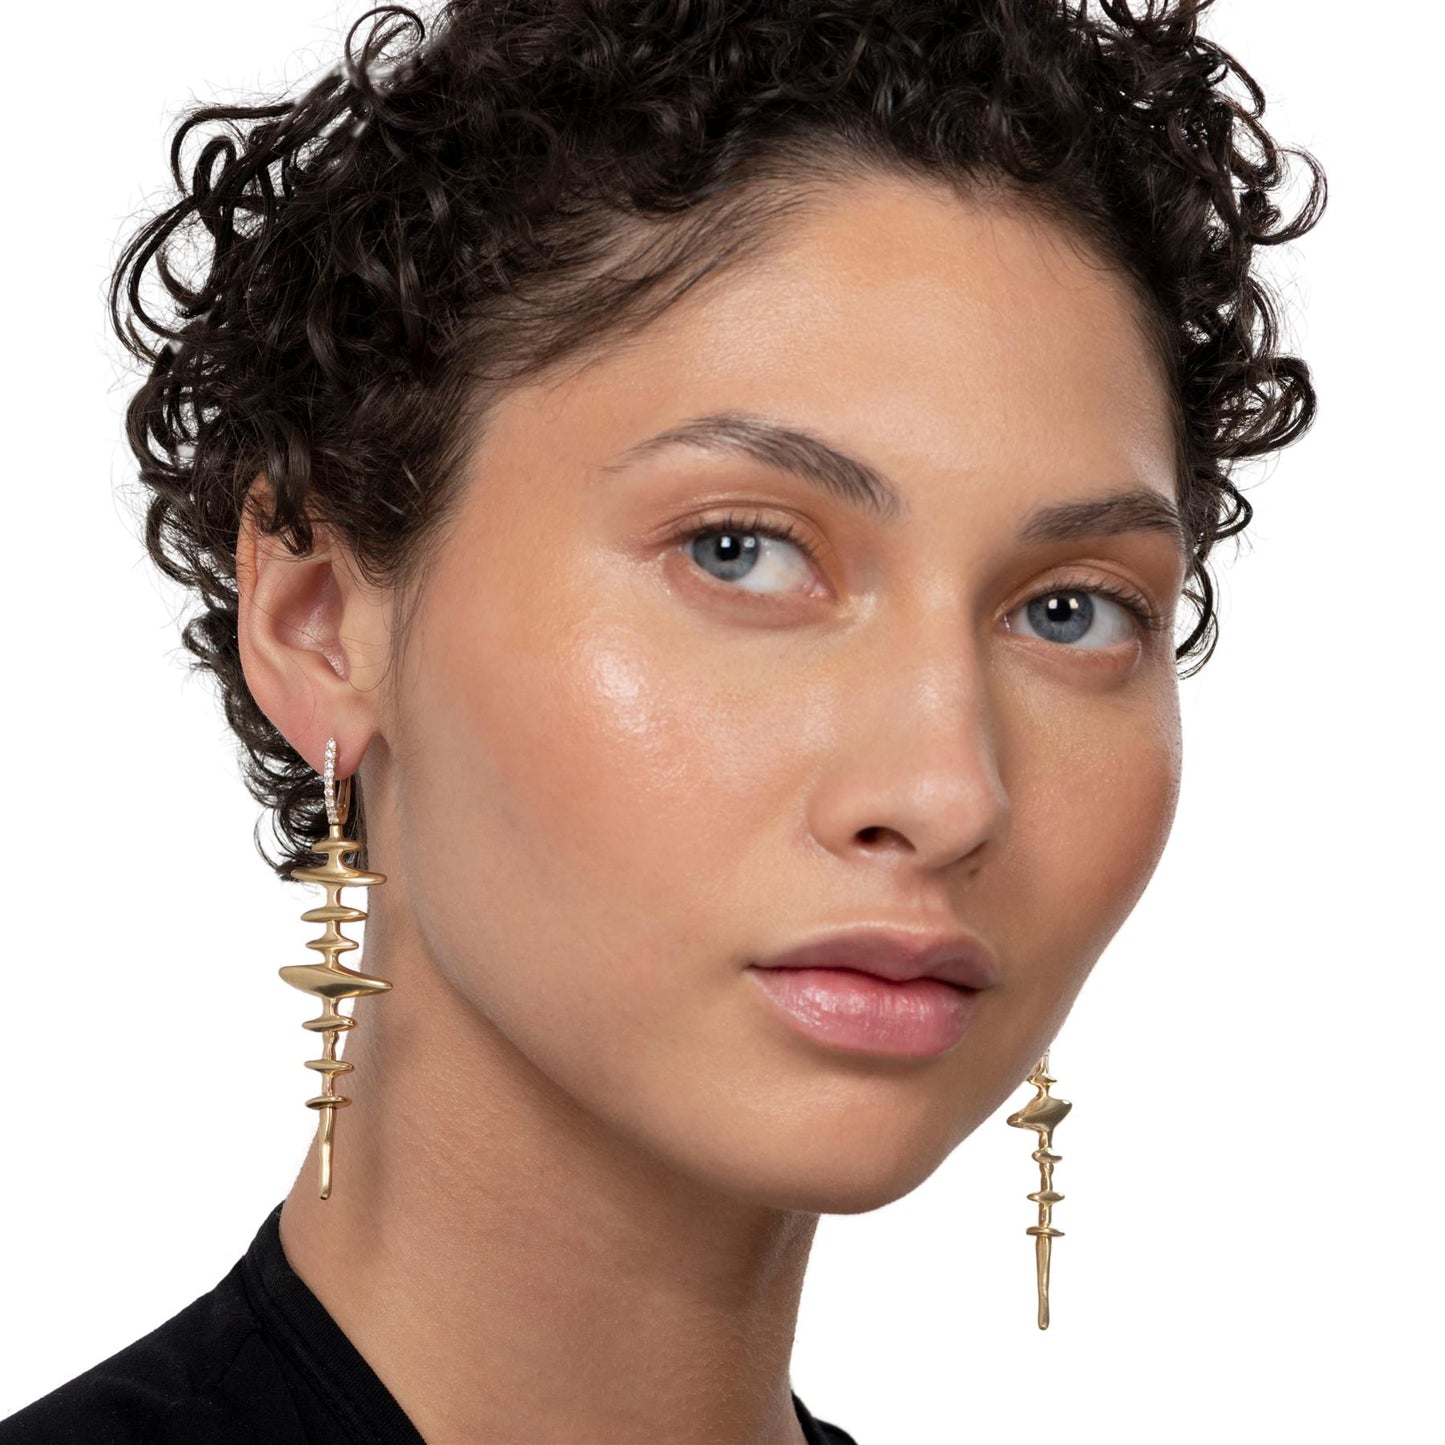 Chrona Totem Earrings by VRAM